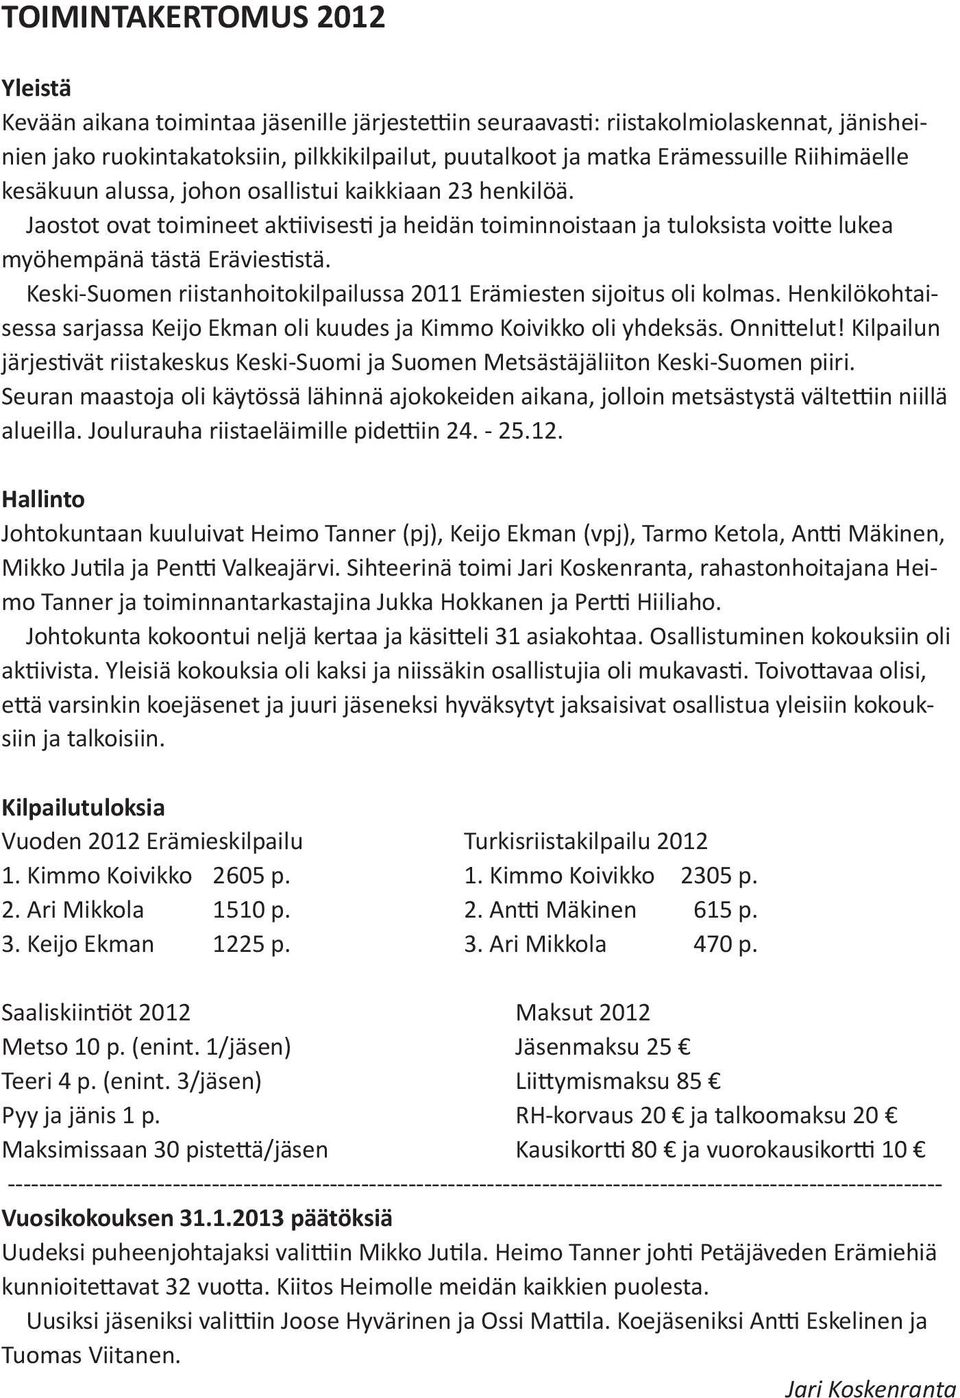 Keski-Suomen riistanhoitokilpailussa 2011 Erämiesten sijoitus oli kolmas. Henkilökohtaisessa sarjassa Keijo Ekman oli kuudes ja Kimmo Koivikko oli yhdeksäs. Onnittelut!